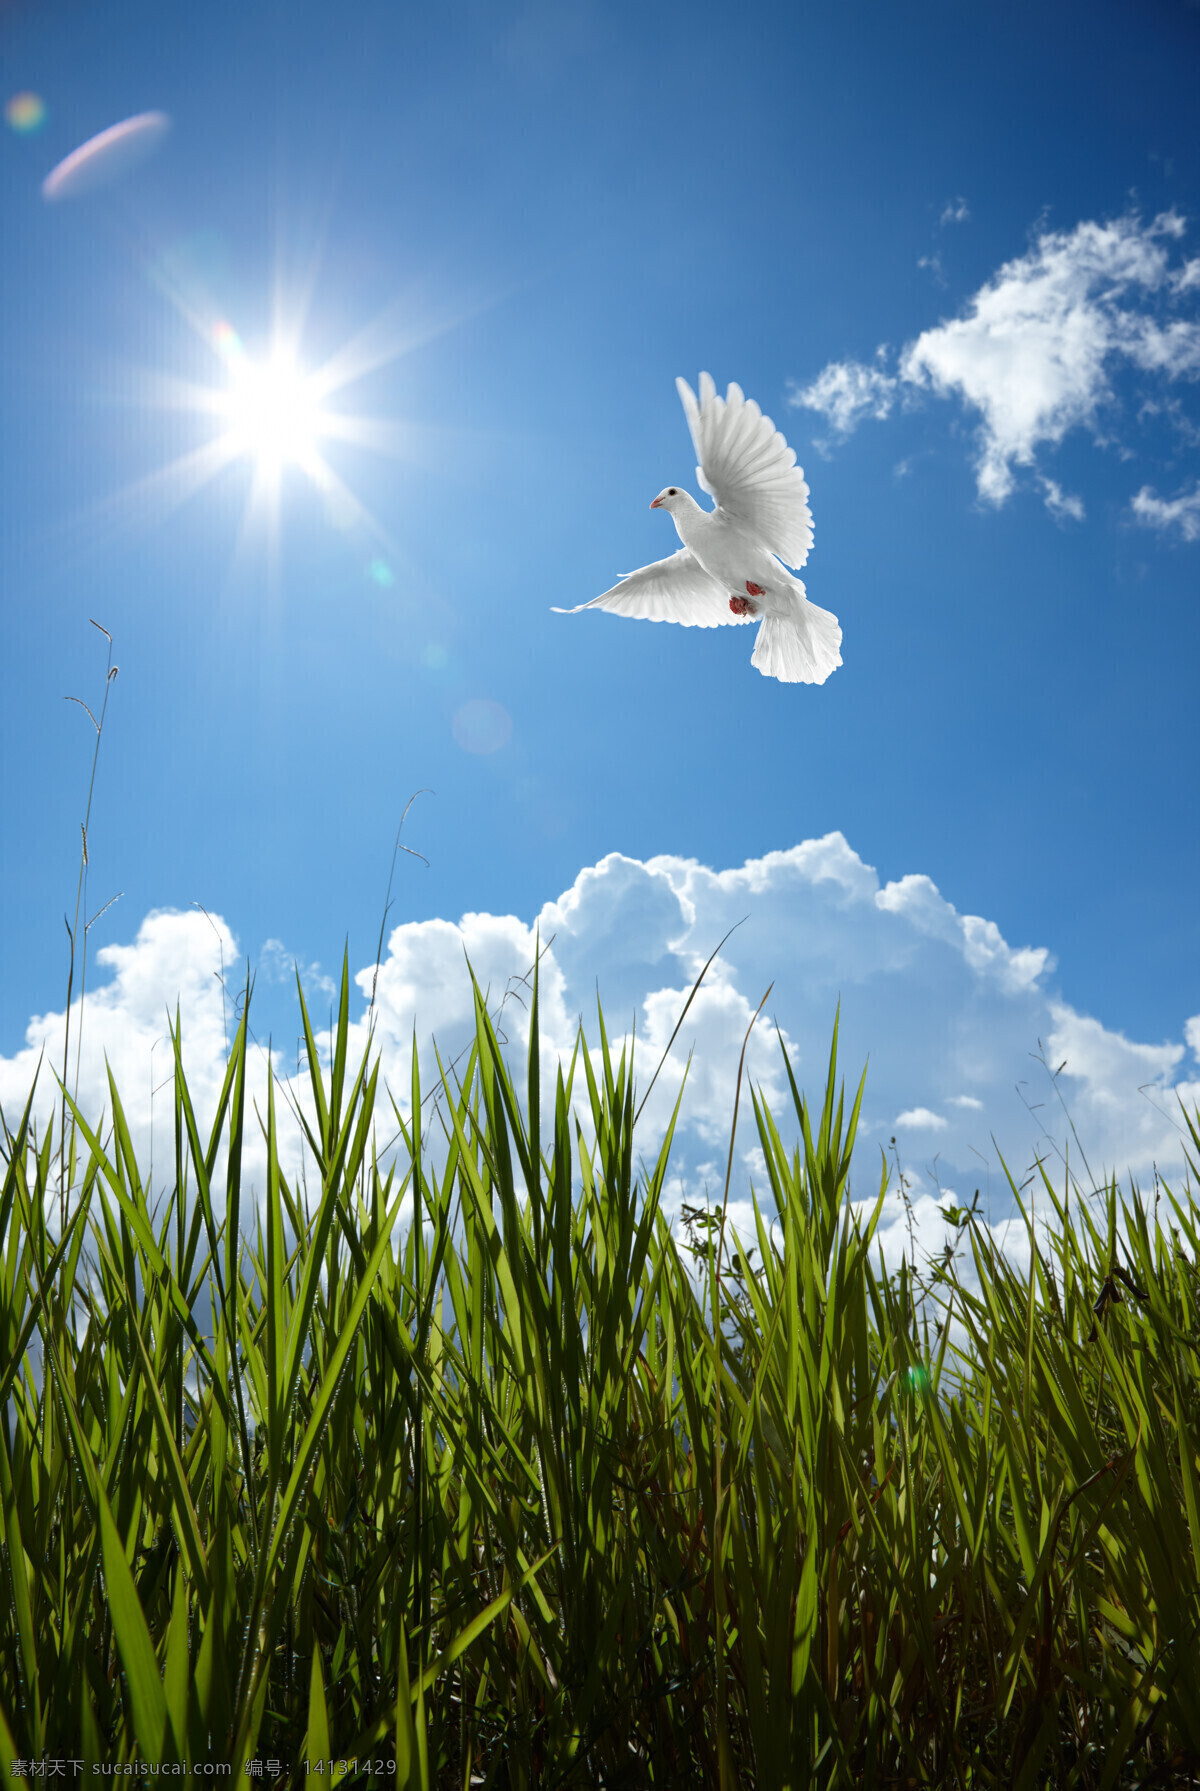 蓝天 中 飞翔 鸽子 白云 白鸽 和平鸽 草地 高清图片 空中飞鸟 生物世界